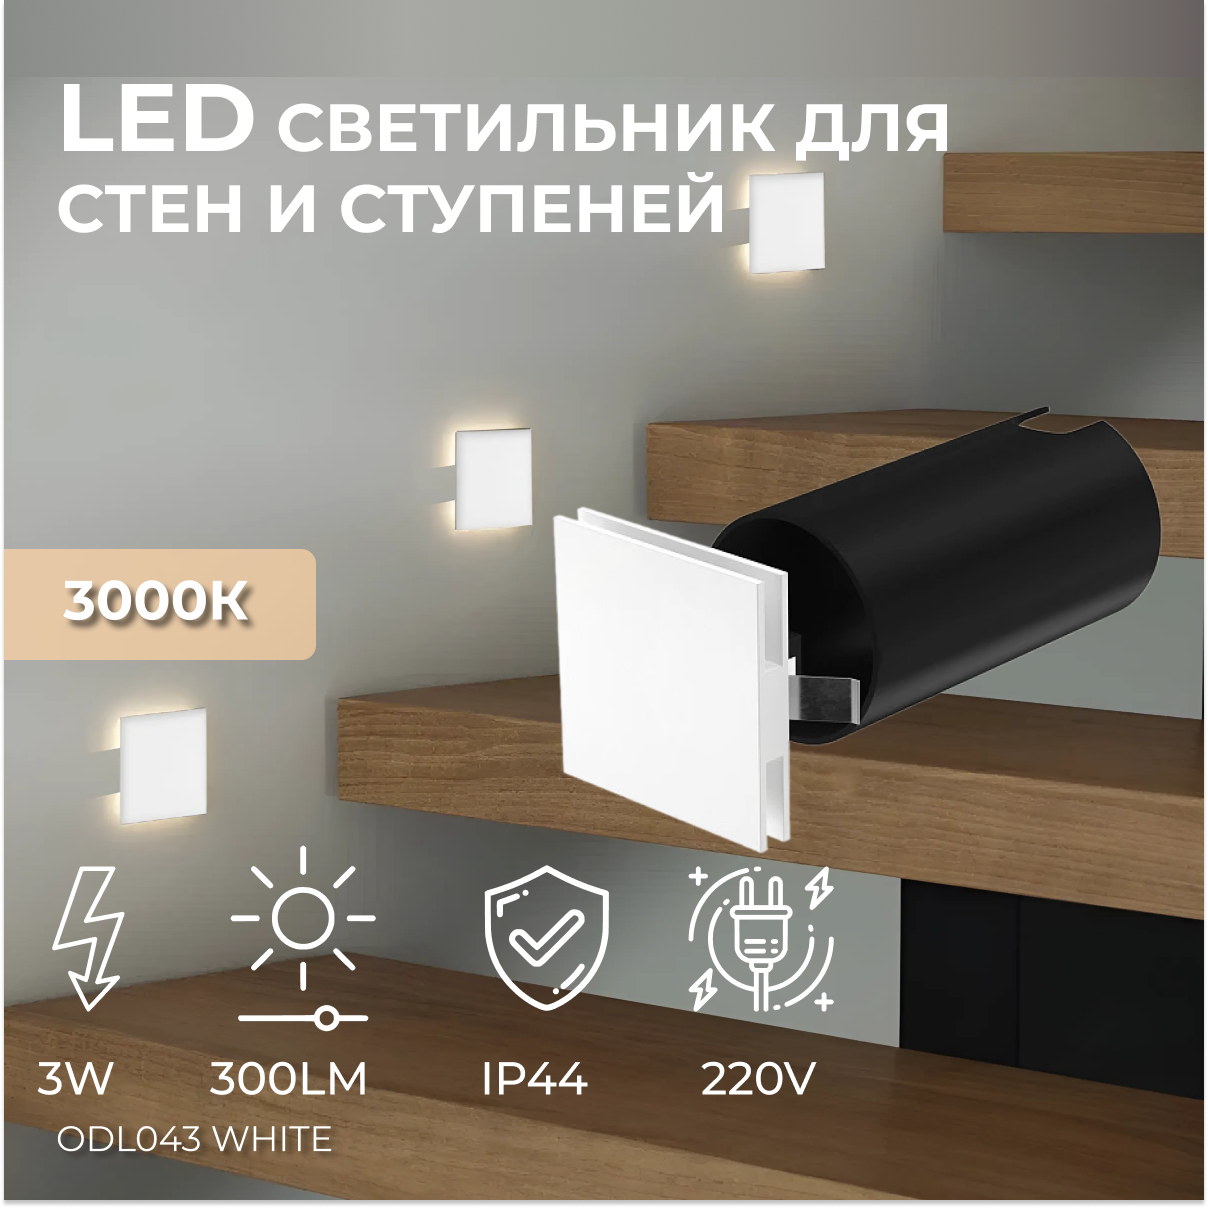 Встраиваемый светодиодный светильник для стен и ступеней Ledron ODL043 White